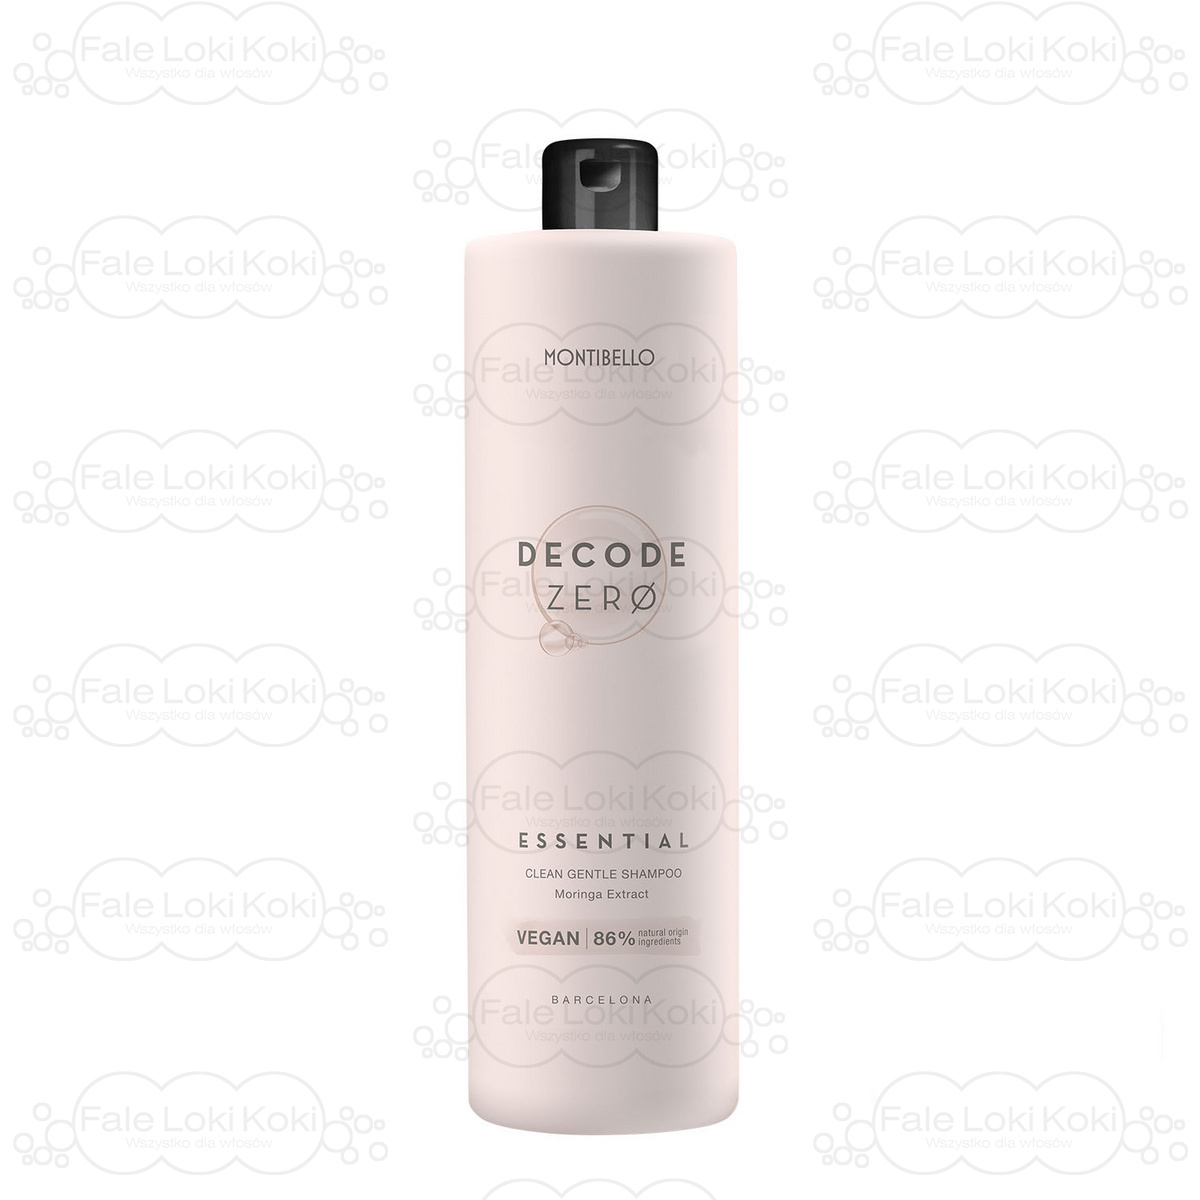 MONTIBELLO DECODE ZERO naturalny szampon do włosów Essential 1000 ml